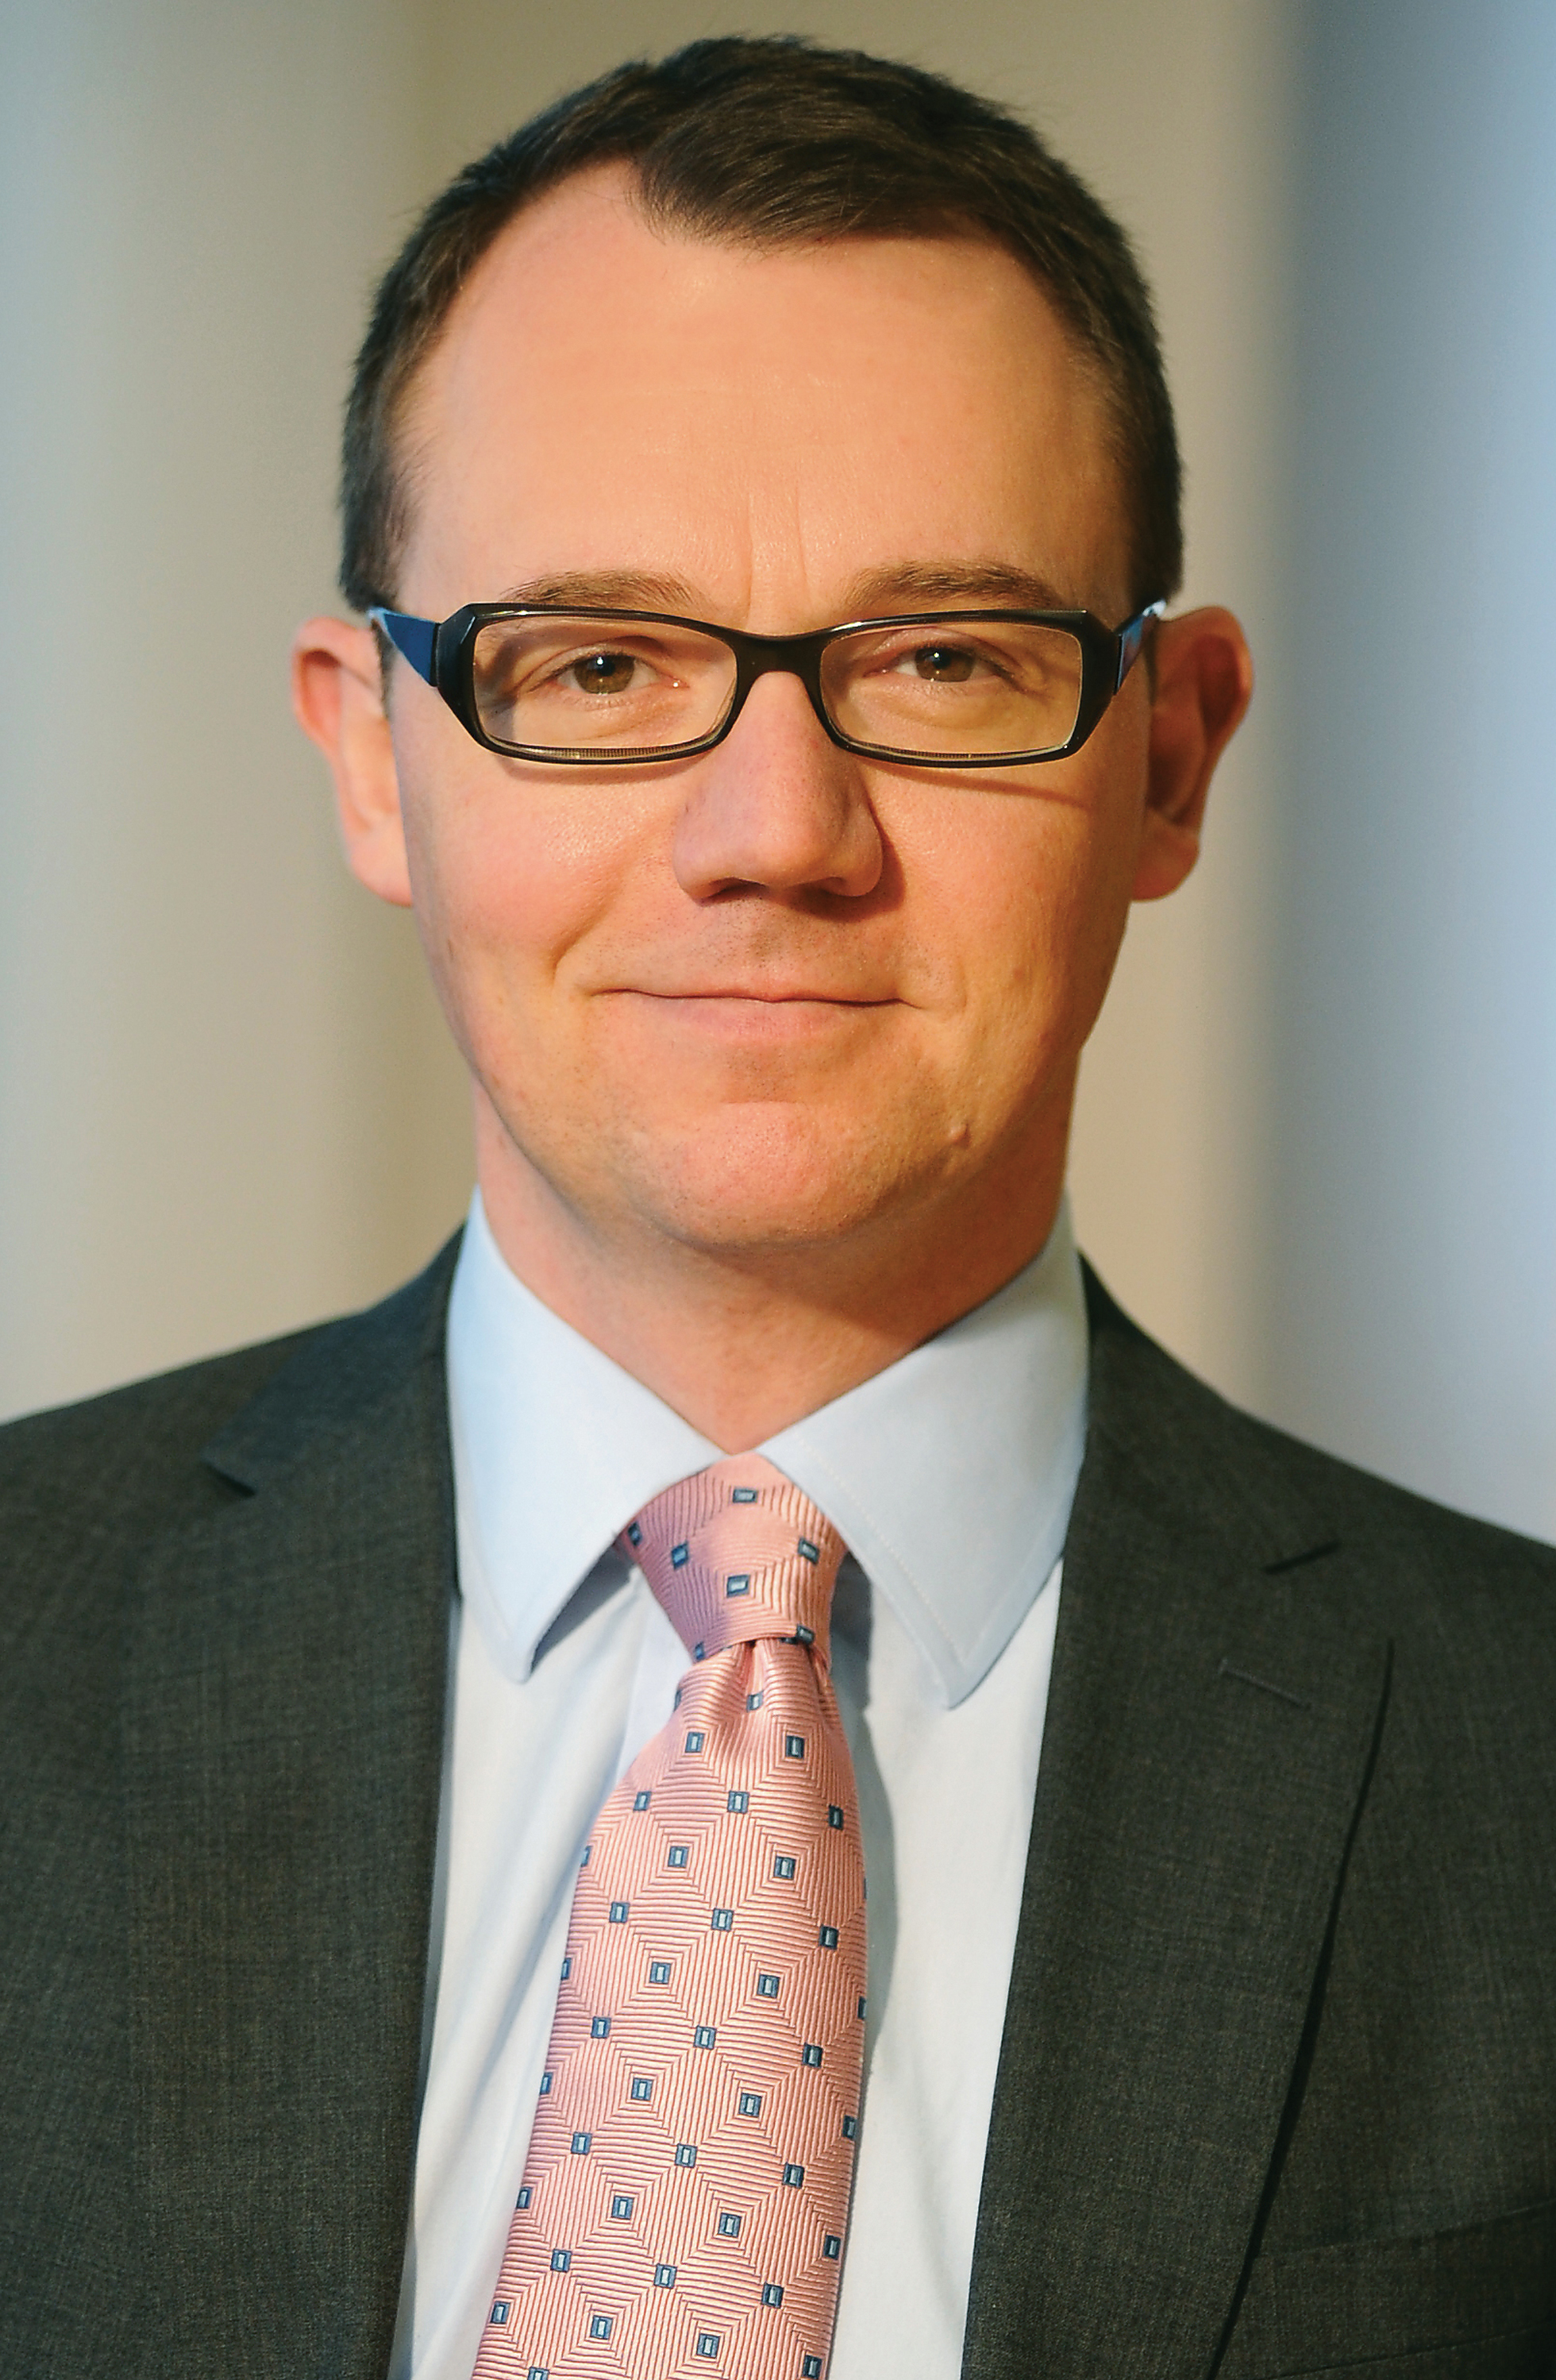 Steven Andrew, M&G Investments multi-asset portfolio manager